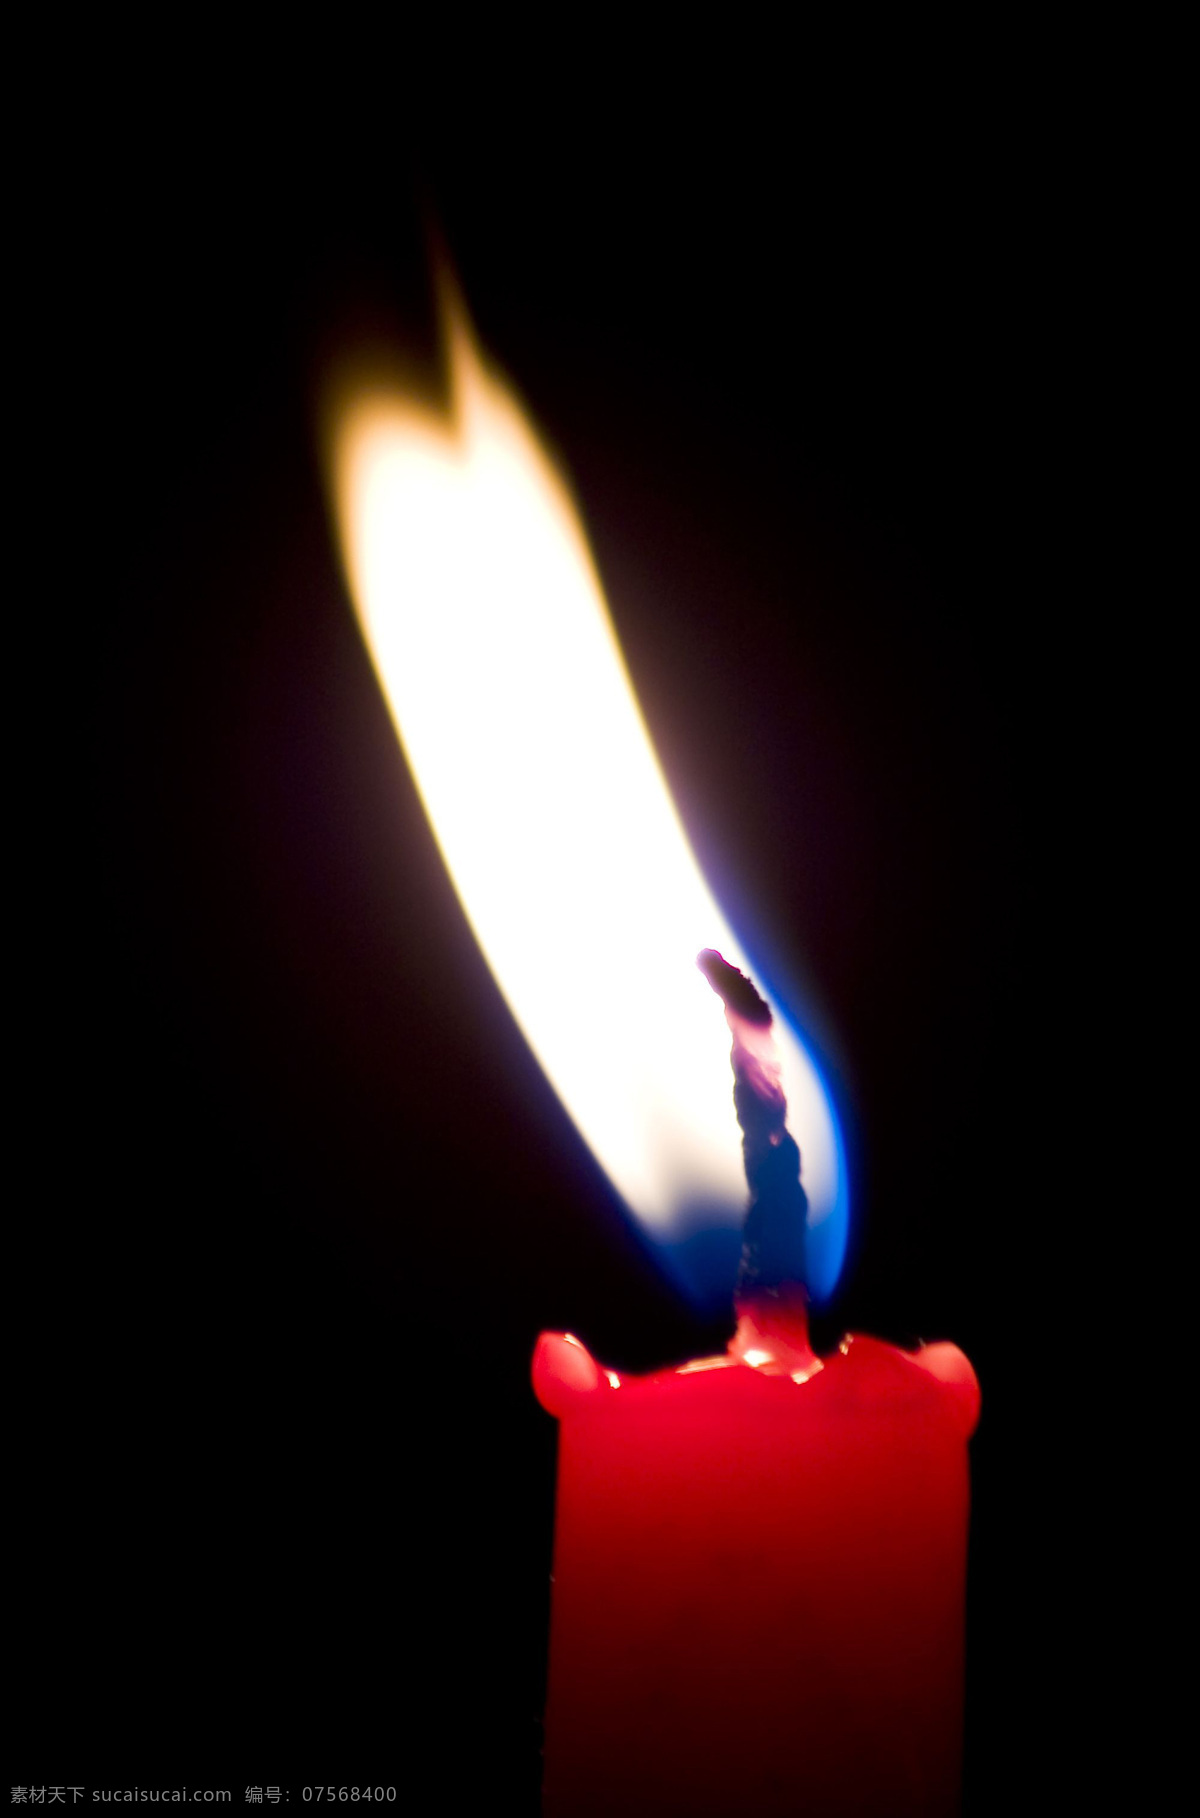 全球 首席 大百科 蜡烛 烛光 祈祷 祈望 红烛 烛光摇曳